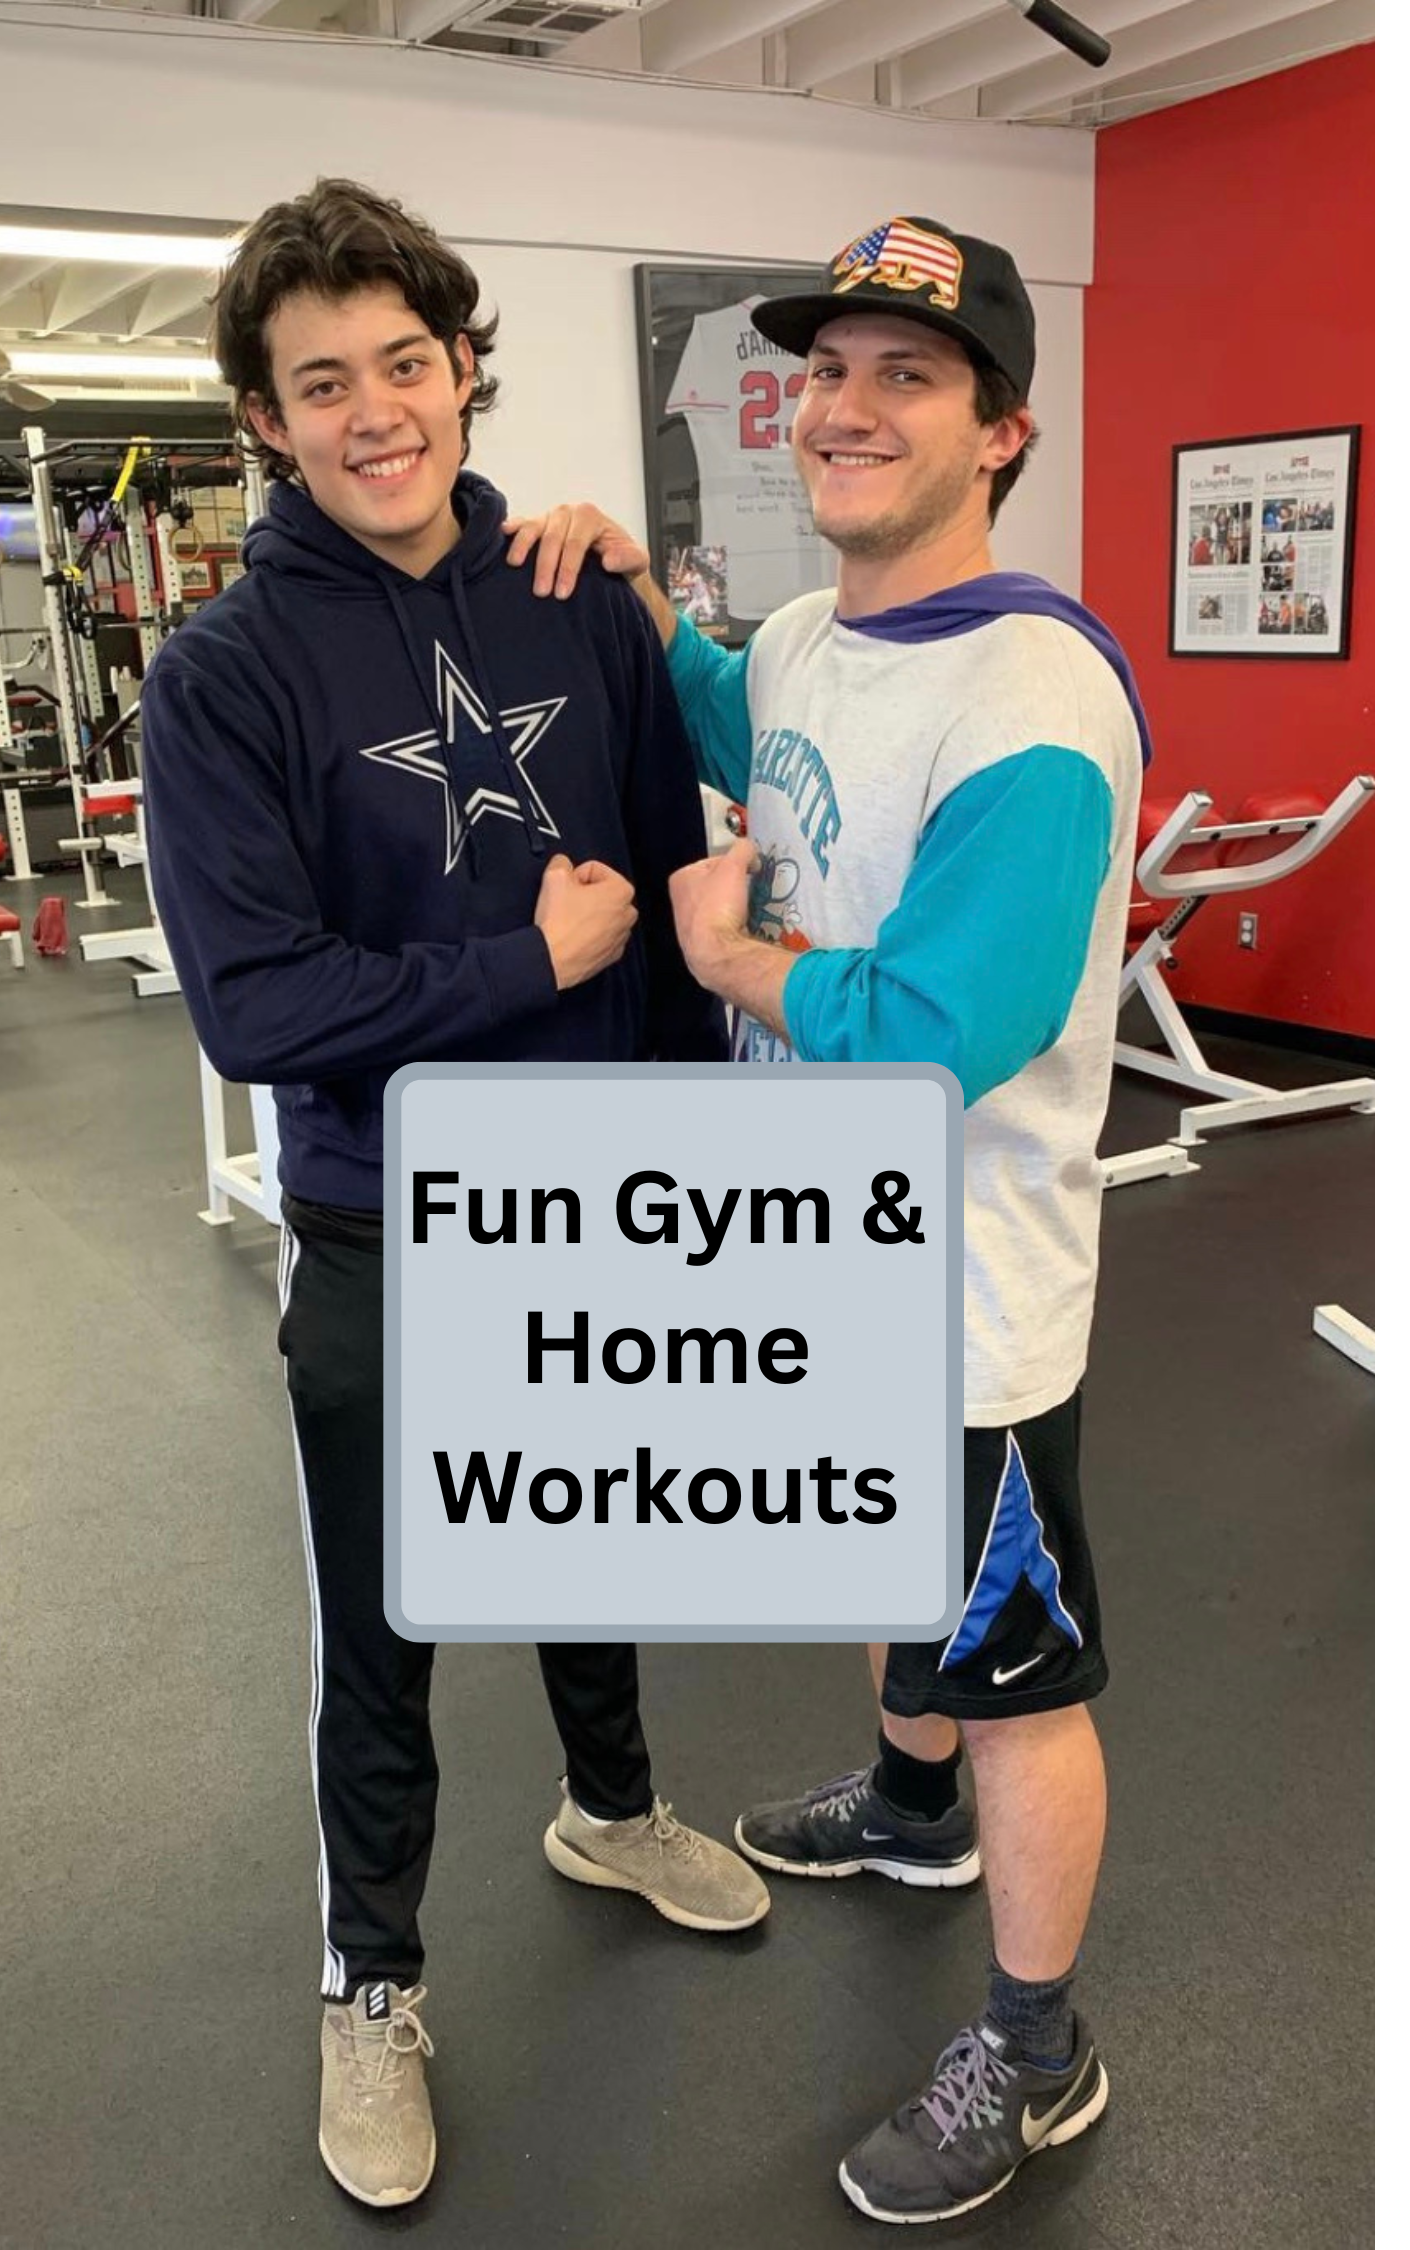 Fun Gym & Home Workouts